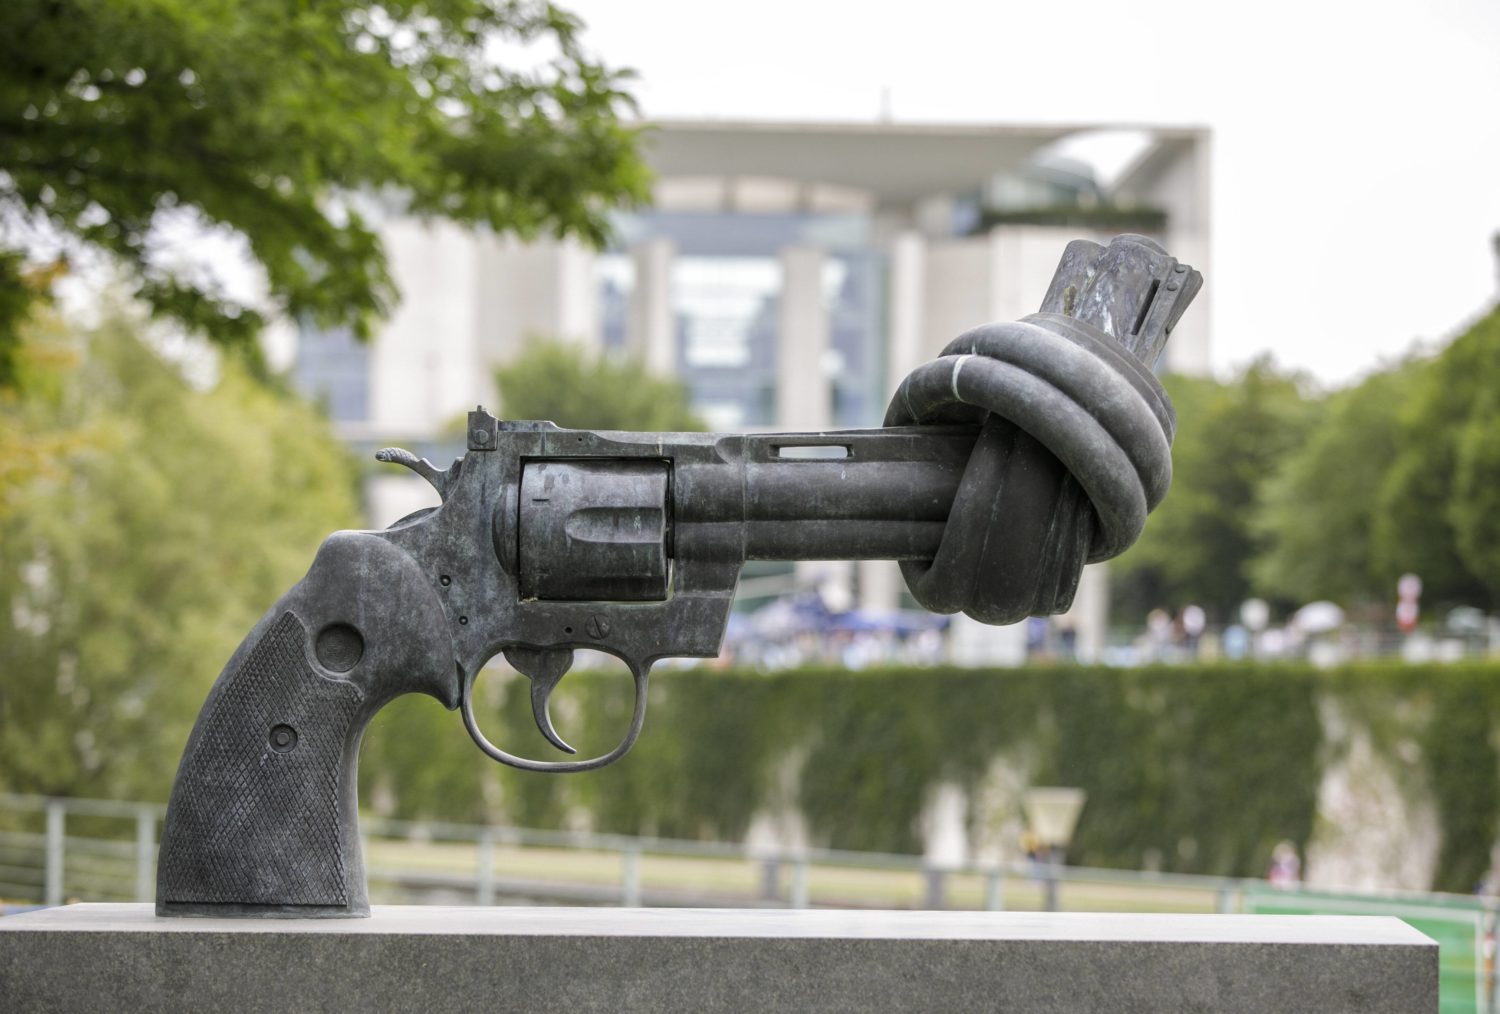 Skulpturen in Berlin: "Non Violence" (verknotete Pistole) des schwedischen Kuenstlers Carl Fredrik Reuterswaerd. Foto: Imago/Photothek